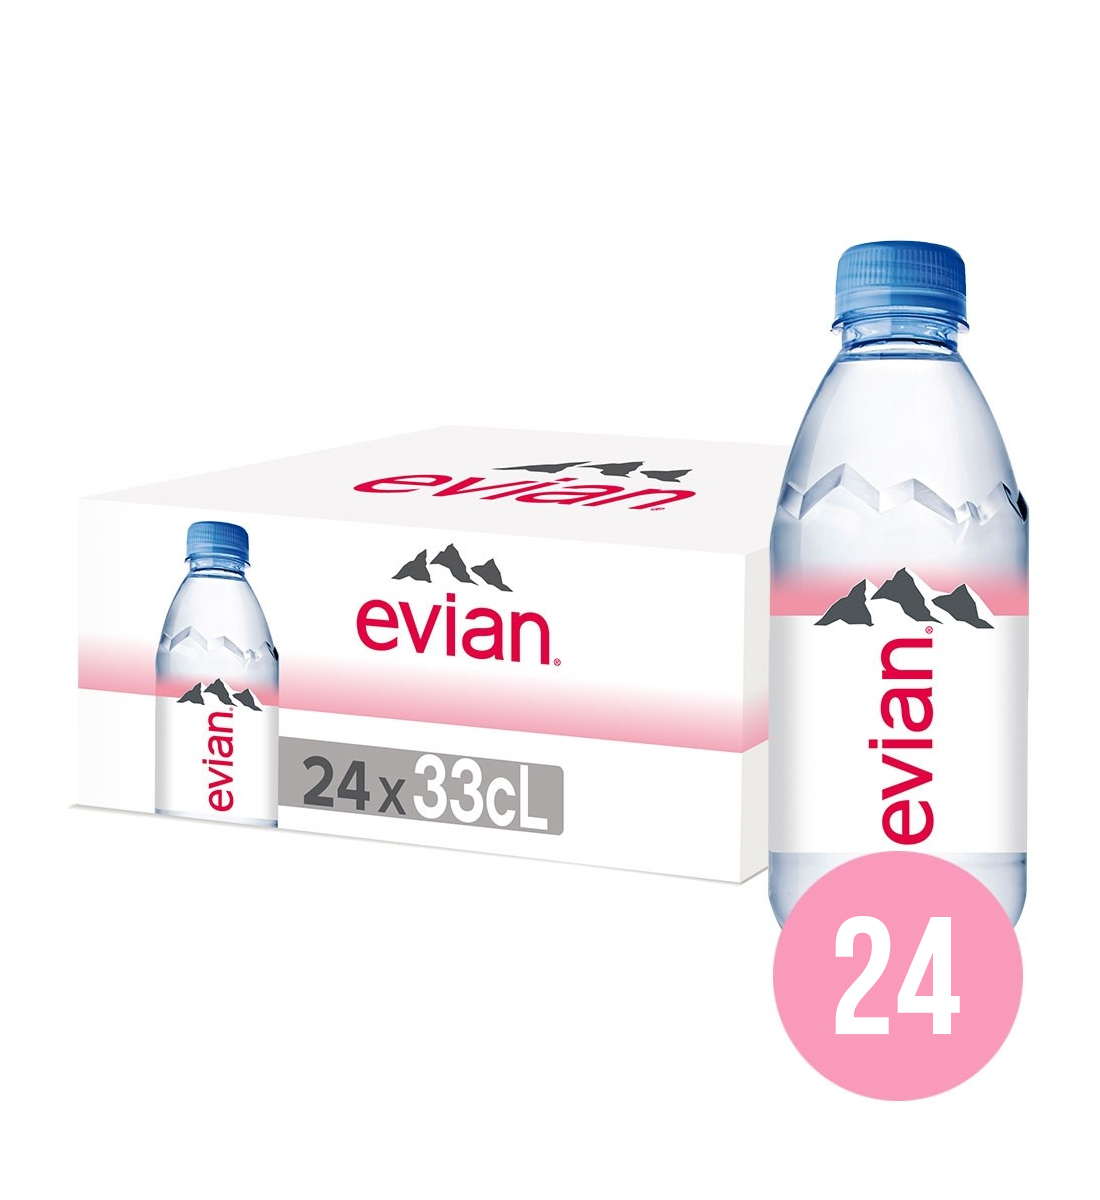 Evian apa minerala naturala plata BAX 24 fl. x 0.33L